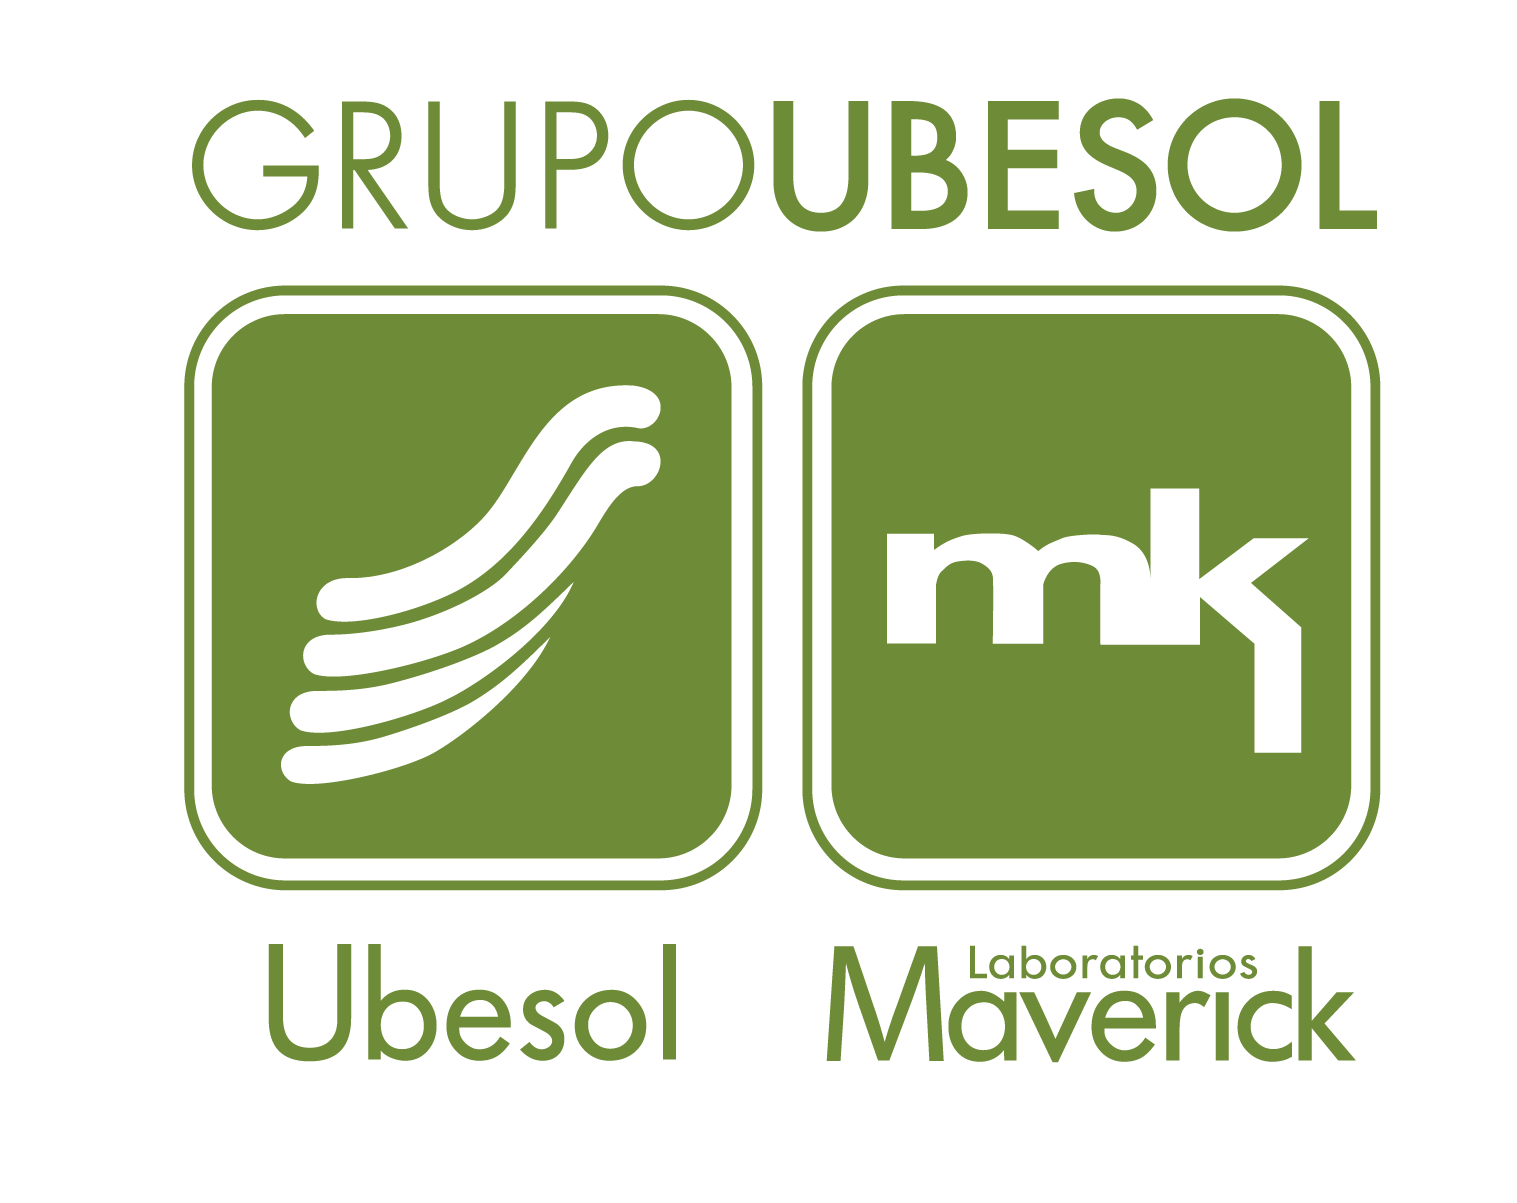 Grupo Ubesol & Lab Maverick - Como bien dicen este producto te